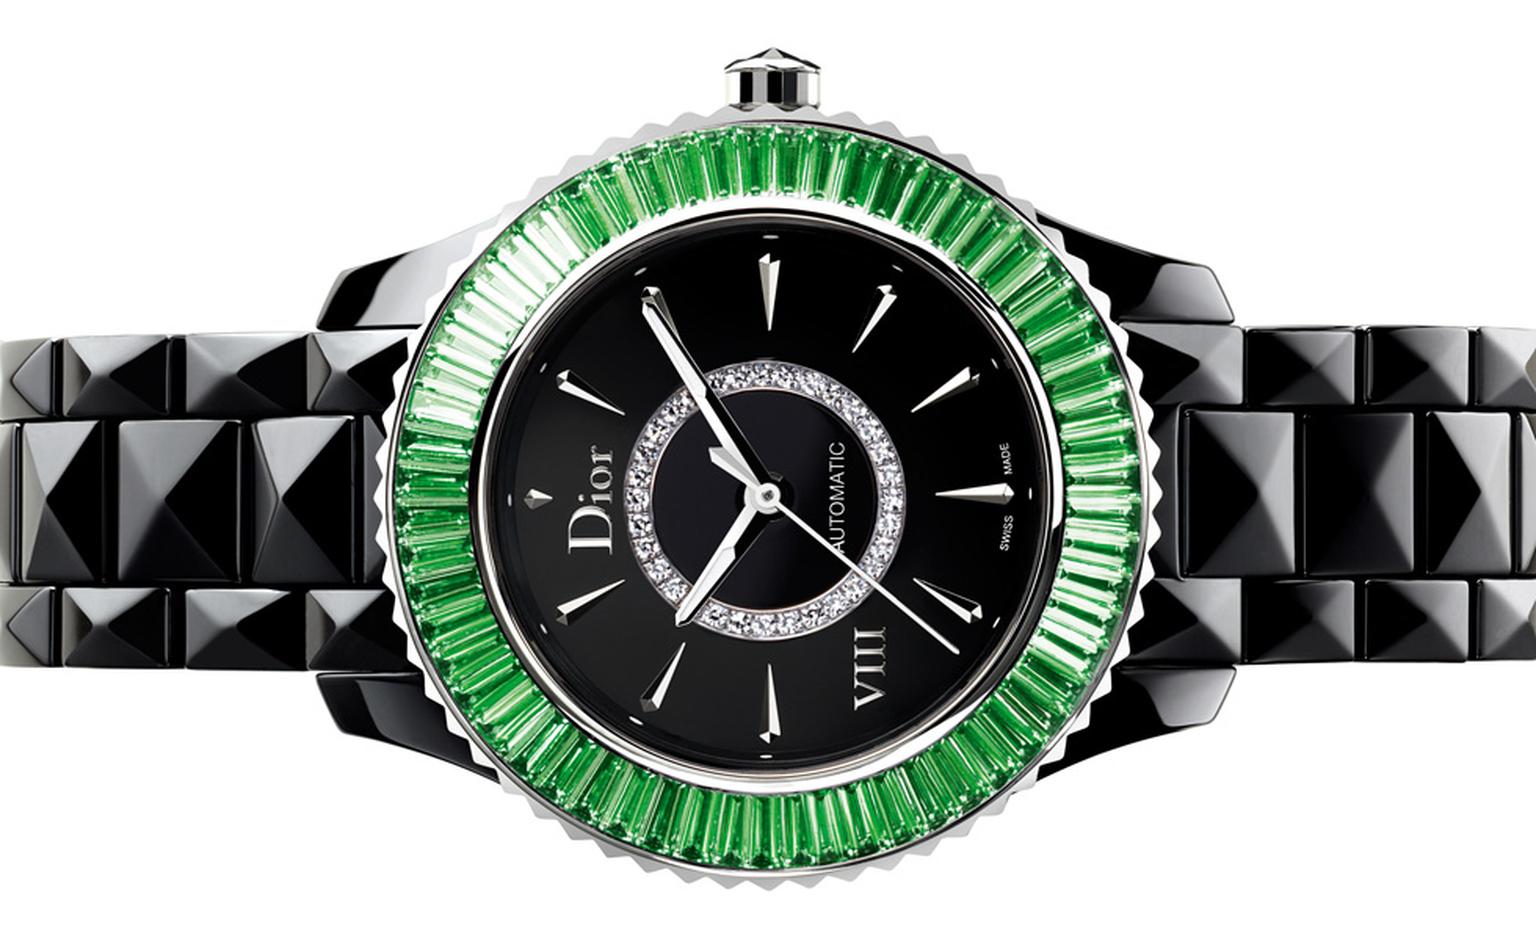 Dior VIII 33mm automatic watch set with green baguette-cut tsavorite garnets.